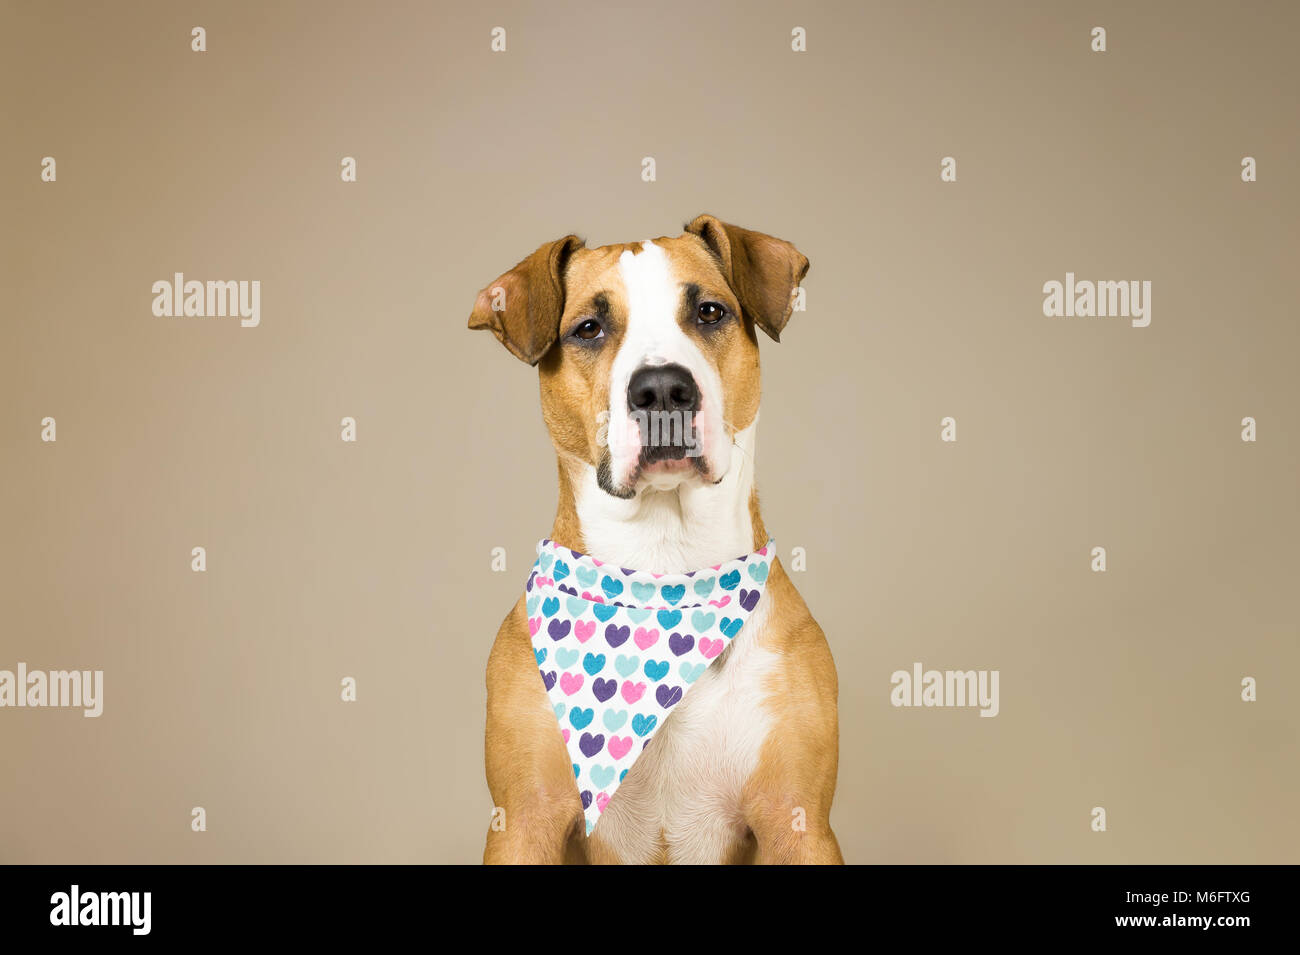 Cute Staffordshire Terrier Hund in Bandana mit Herzen. Junge pitbull Welpen sitzt in Neutralstellung backgraund zum Valentinstag posing Stockfoto